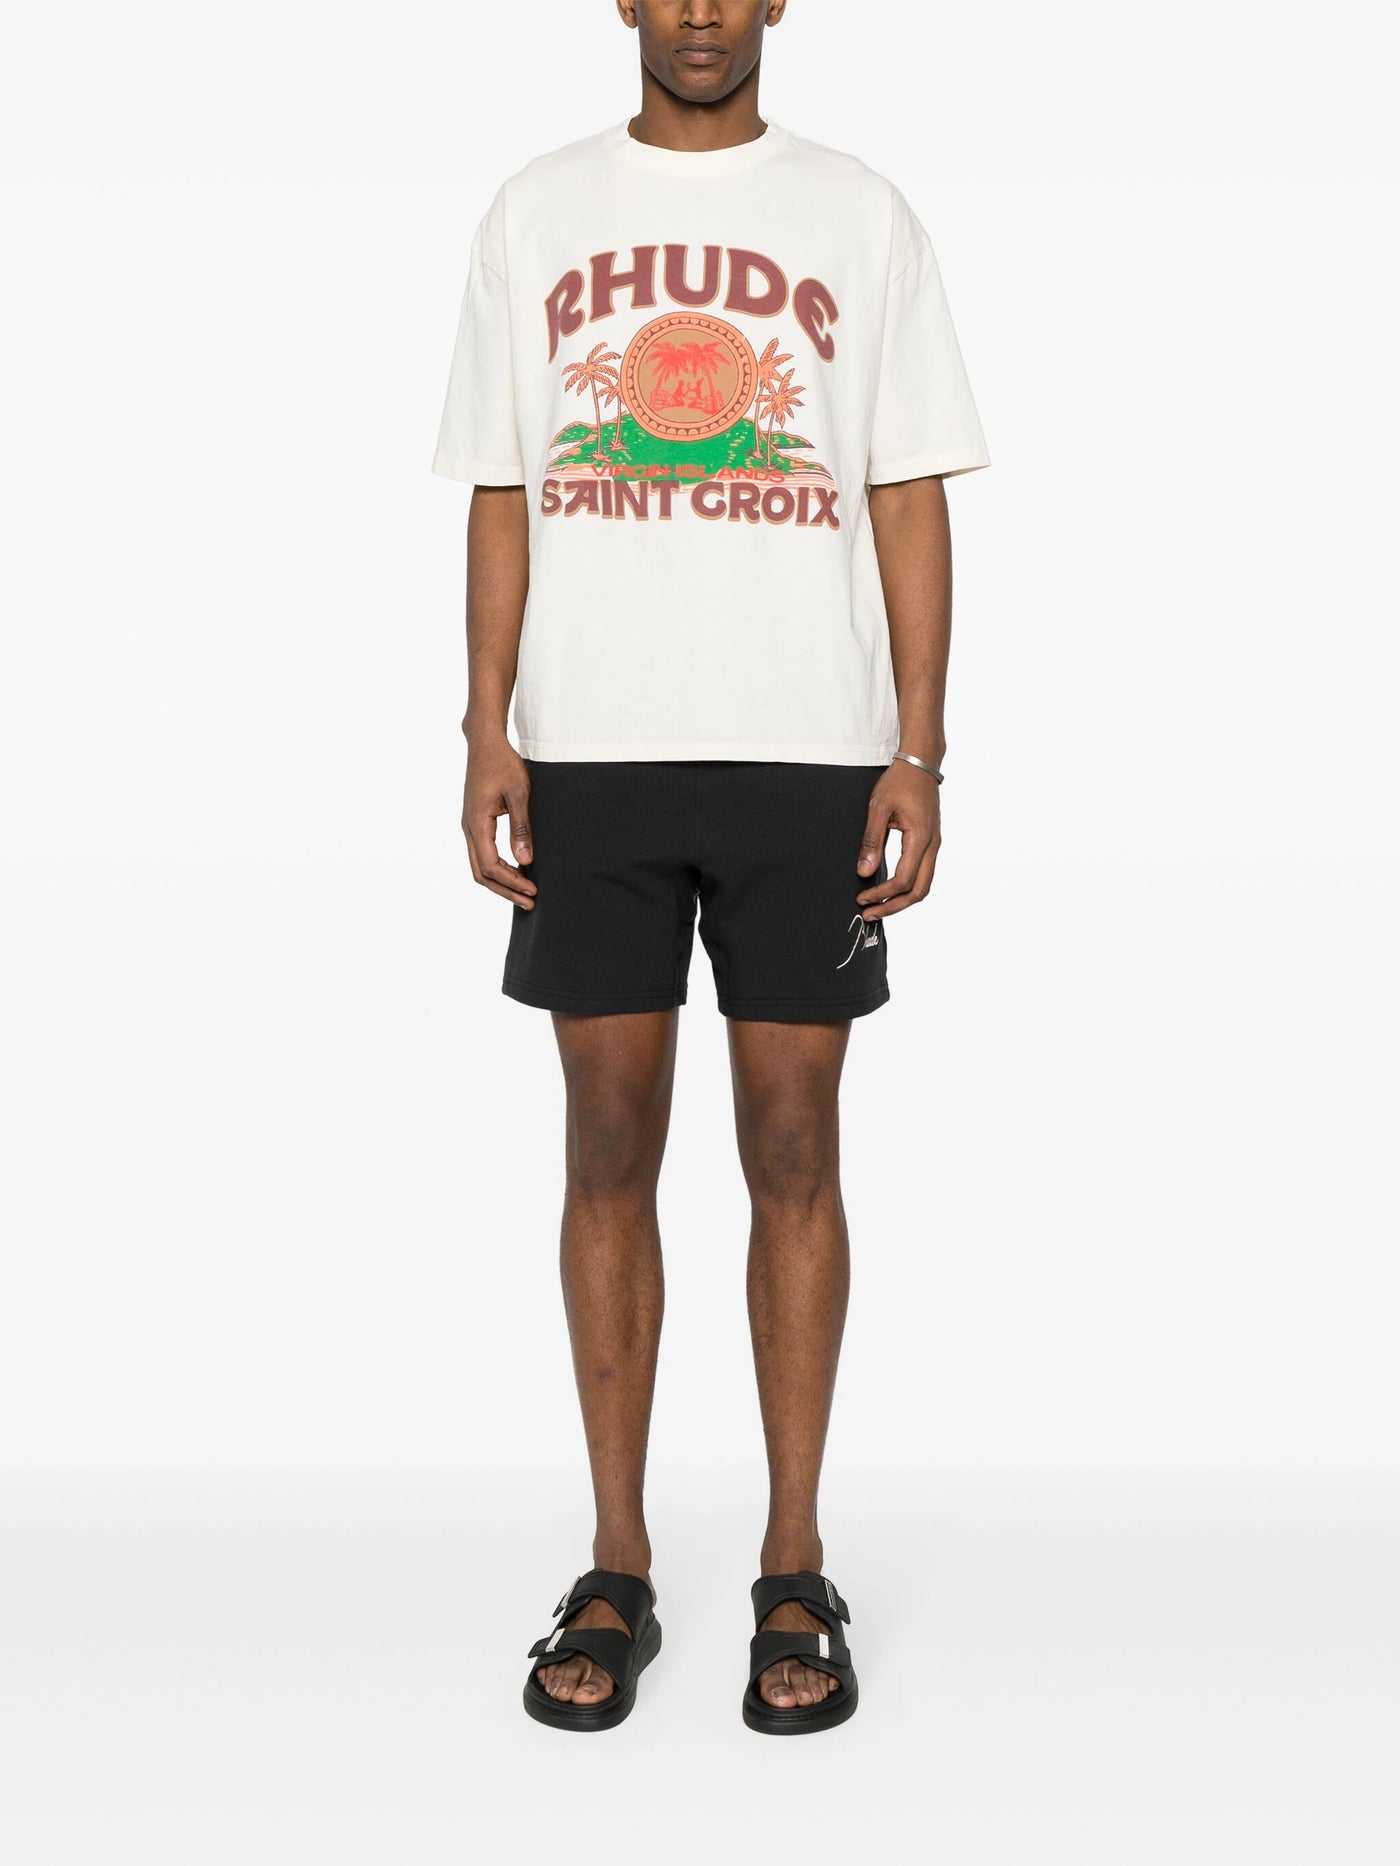 RHUDE - T-shirt Saint Croix